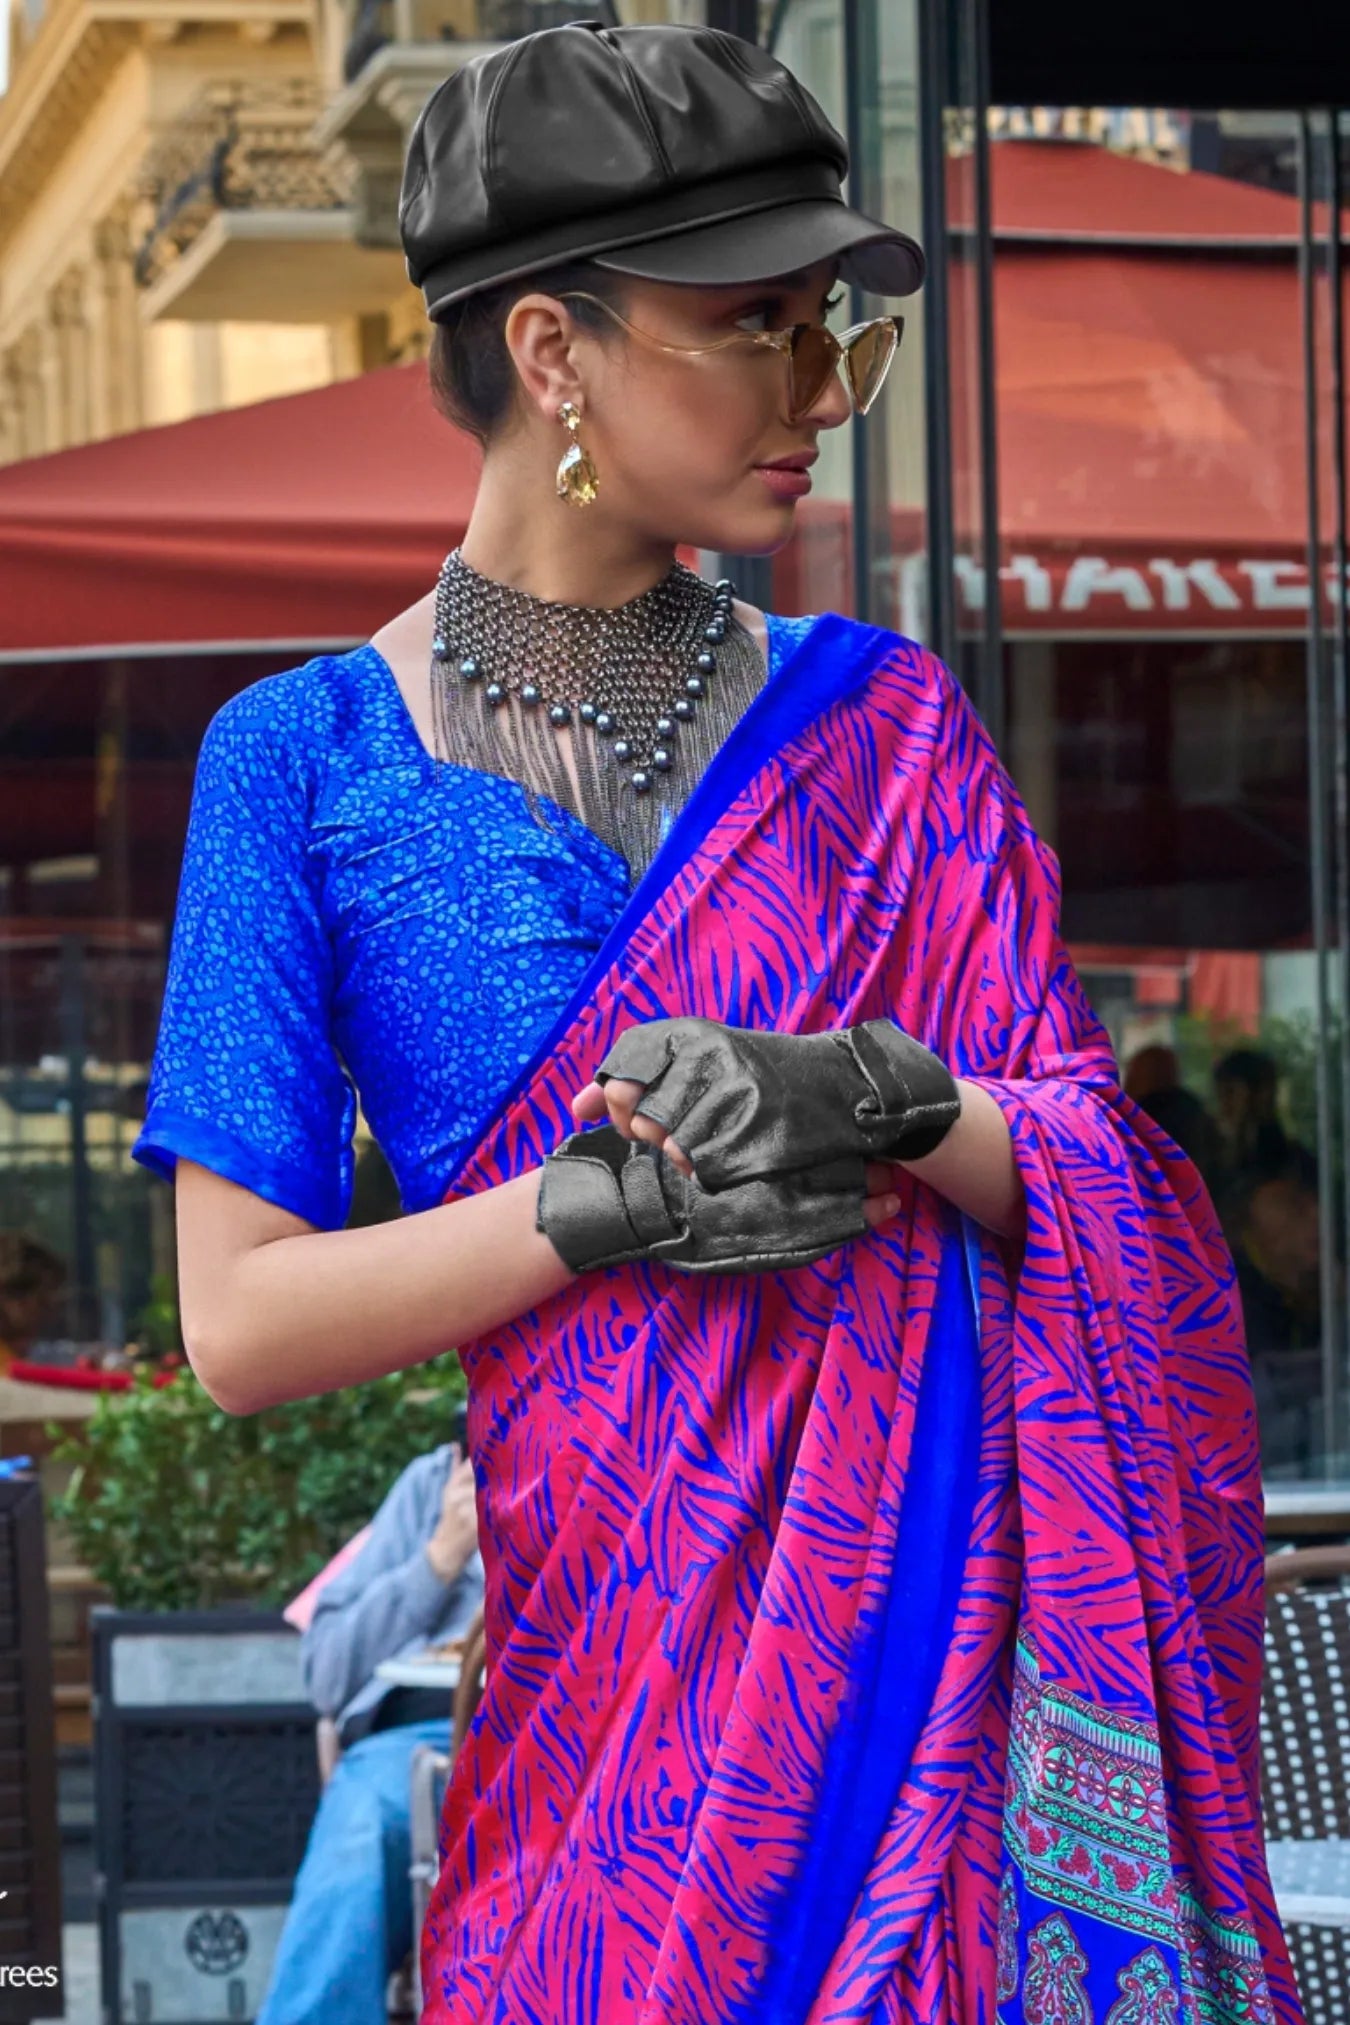 Hot Pink Printed Designer Satin Silk Saree with Blouse Piece